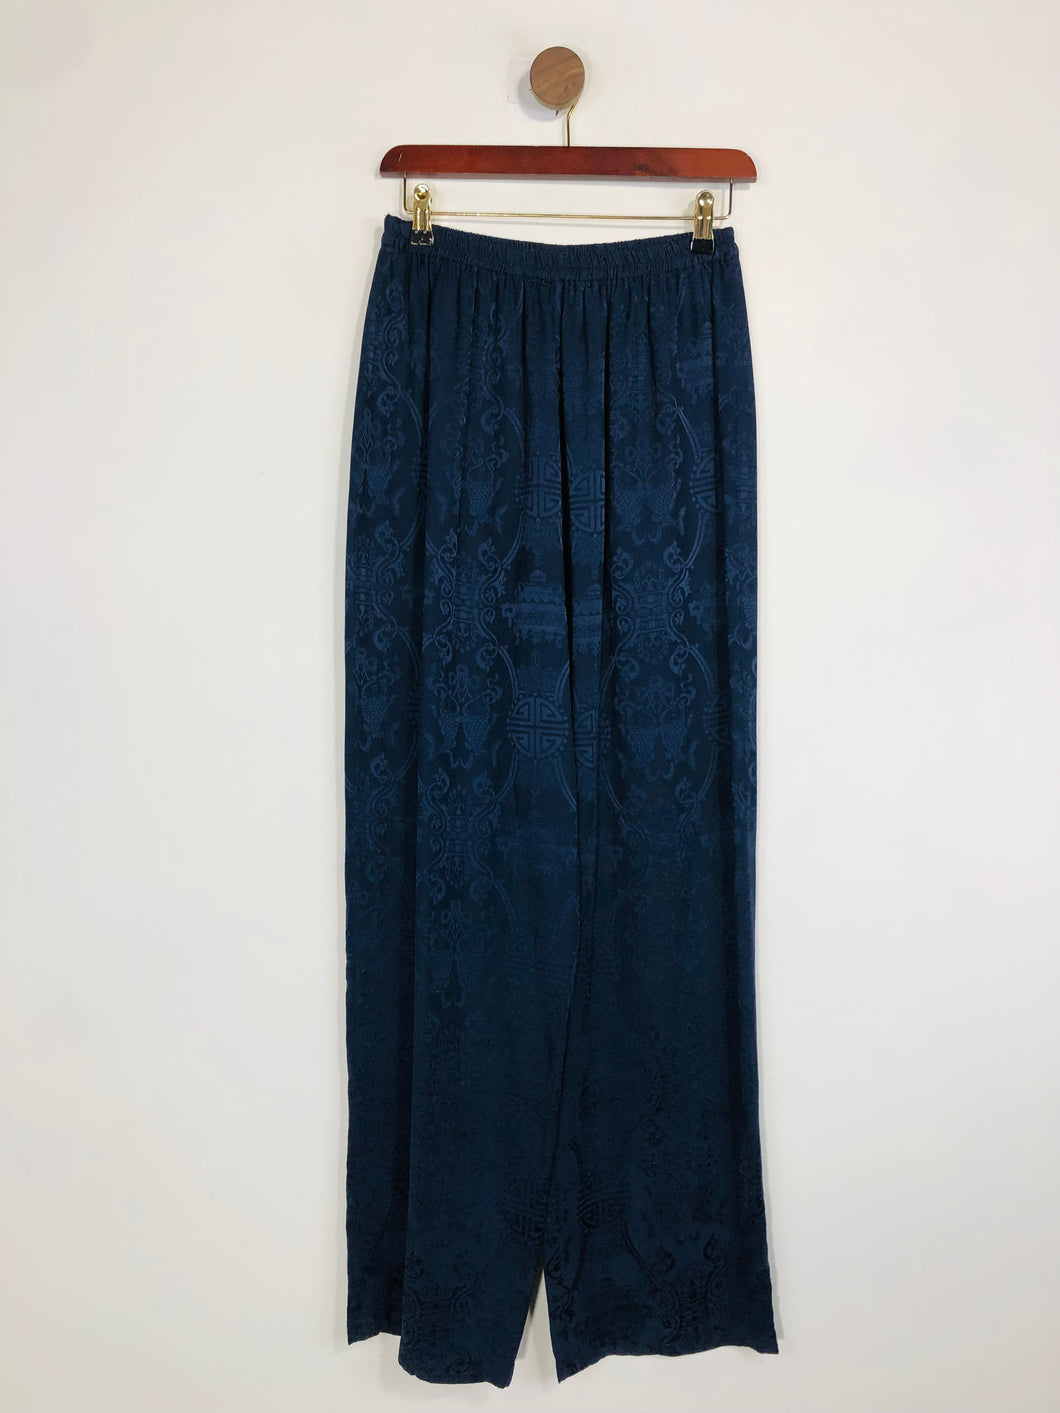 Monsoon Women's Silk High Waist Casual Trousers | M UK10-12 | Blue